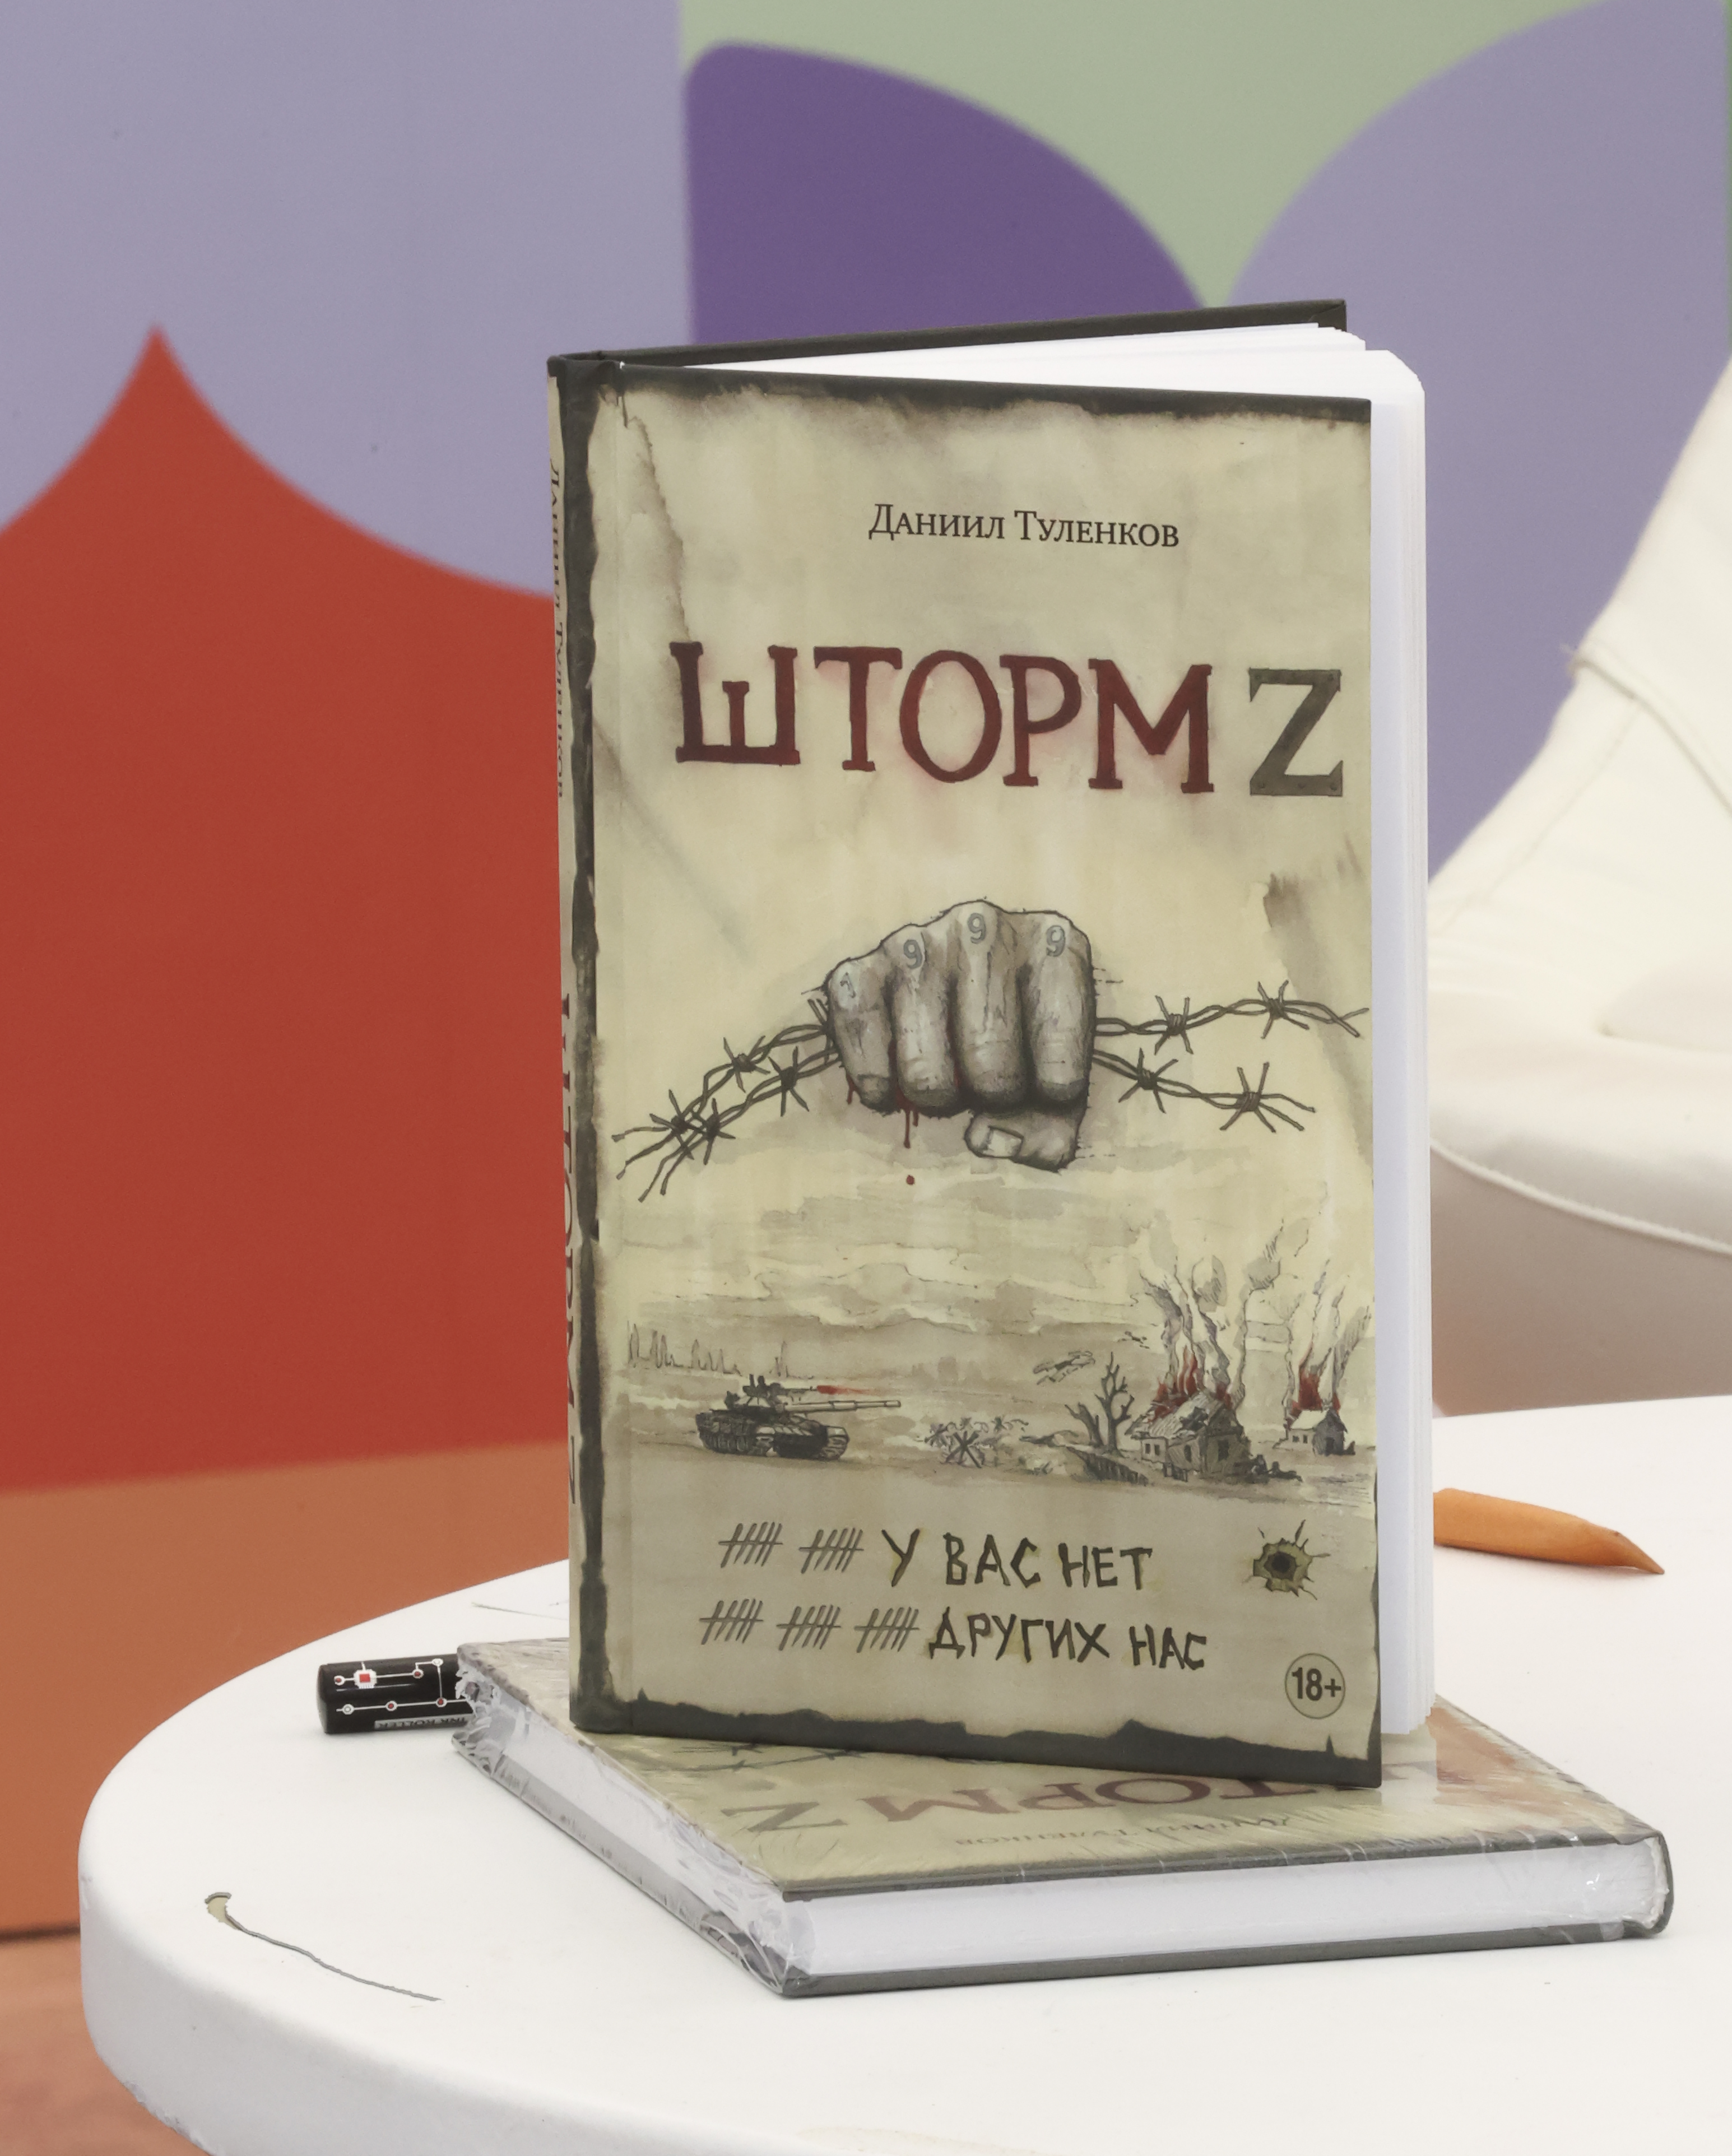 На фестивале «Красная площадь» представили книгу участника СВО «Шторм Z»